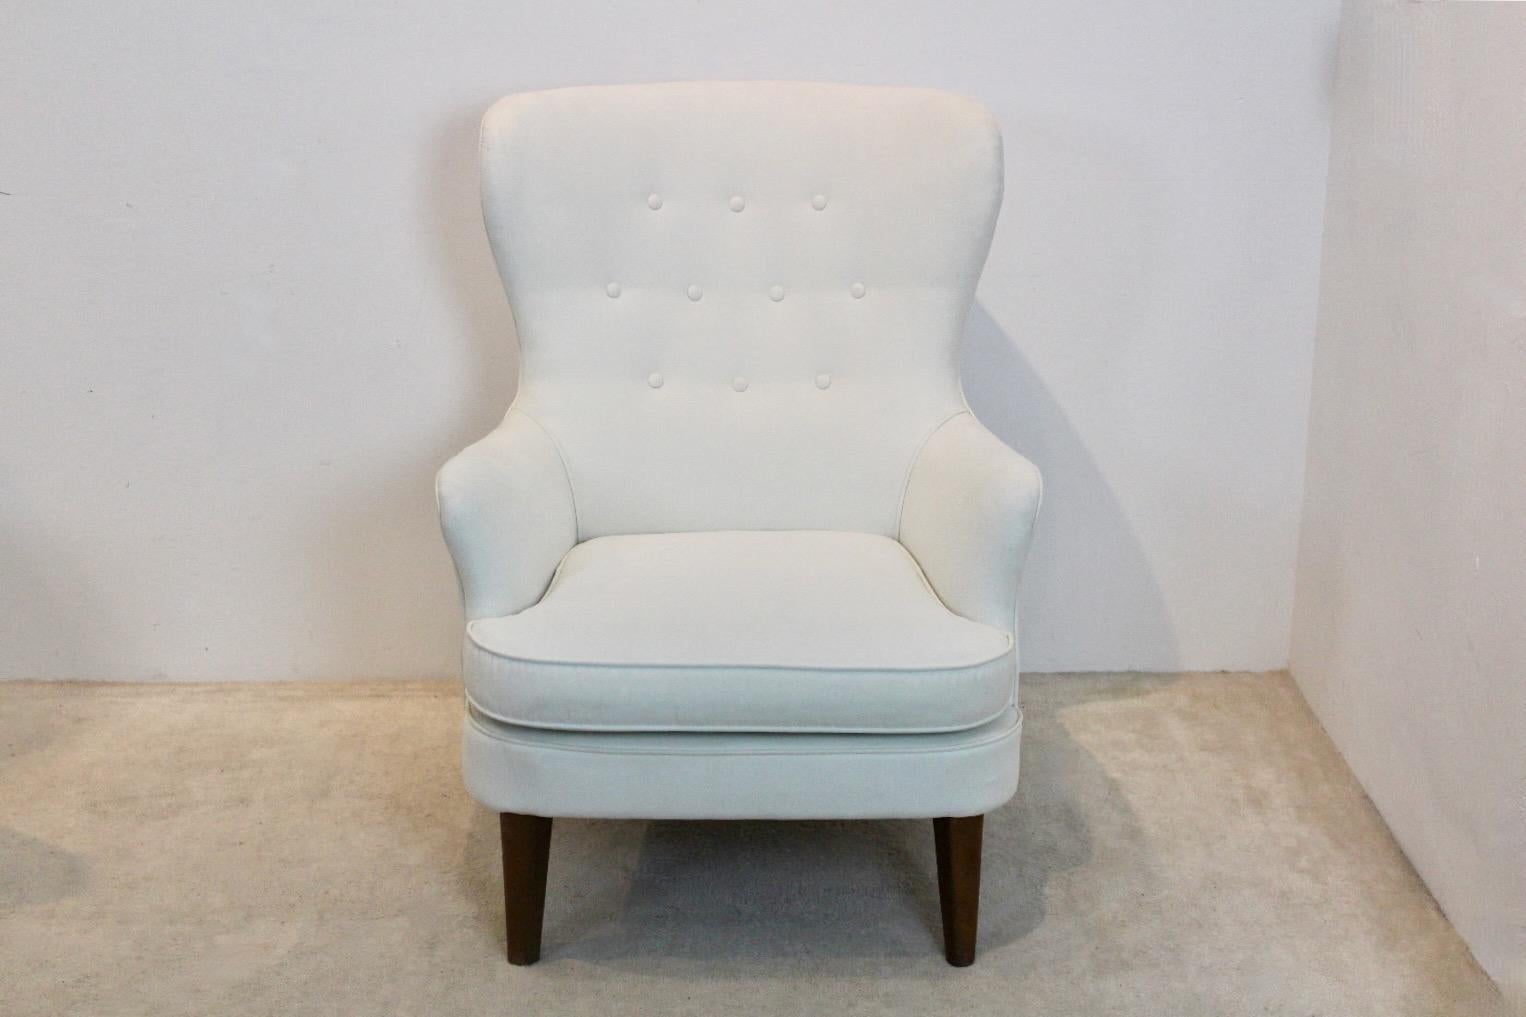 Schöner Artifort Cocktail Chair, entworfen von Theo Ruth in den frühen 1950er Jahren. Der Stuhl befindet sich in einem einzigartigen Zustand mit einer wunderschönen schneeweißen Alcantara-Polsterung in sehr gutem Zustand. Dieser Stuhl ist der so